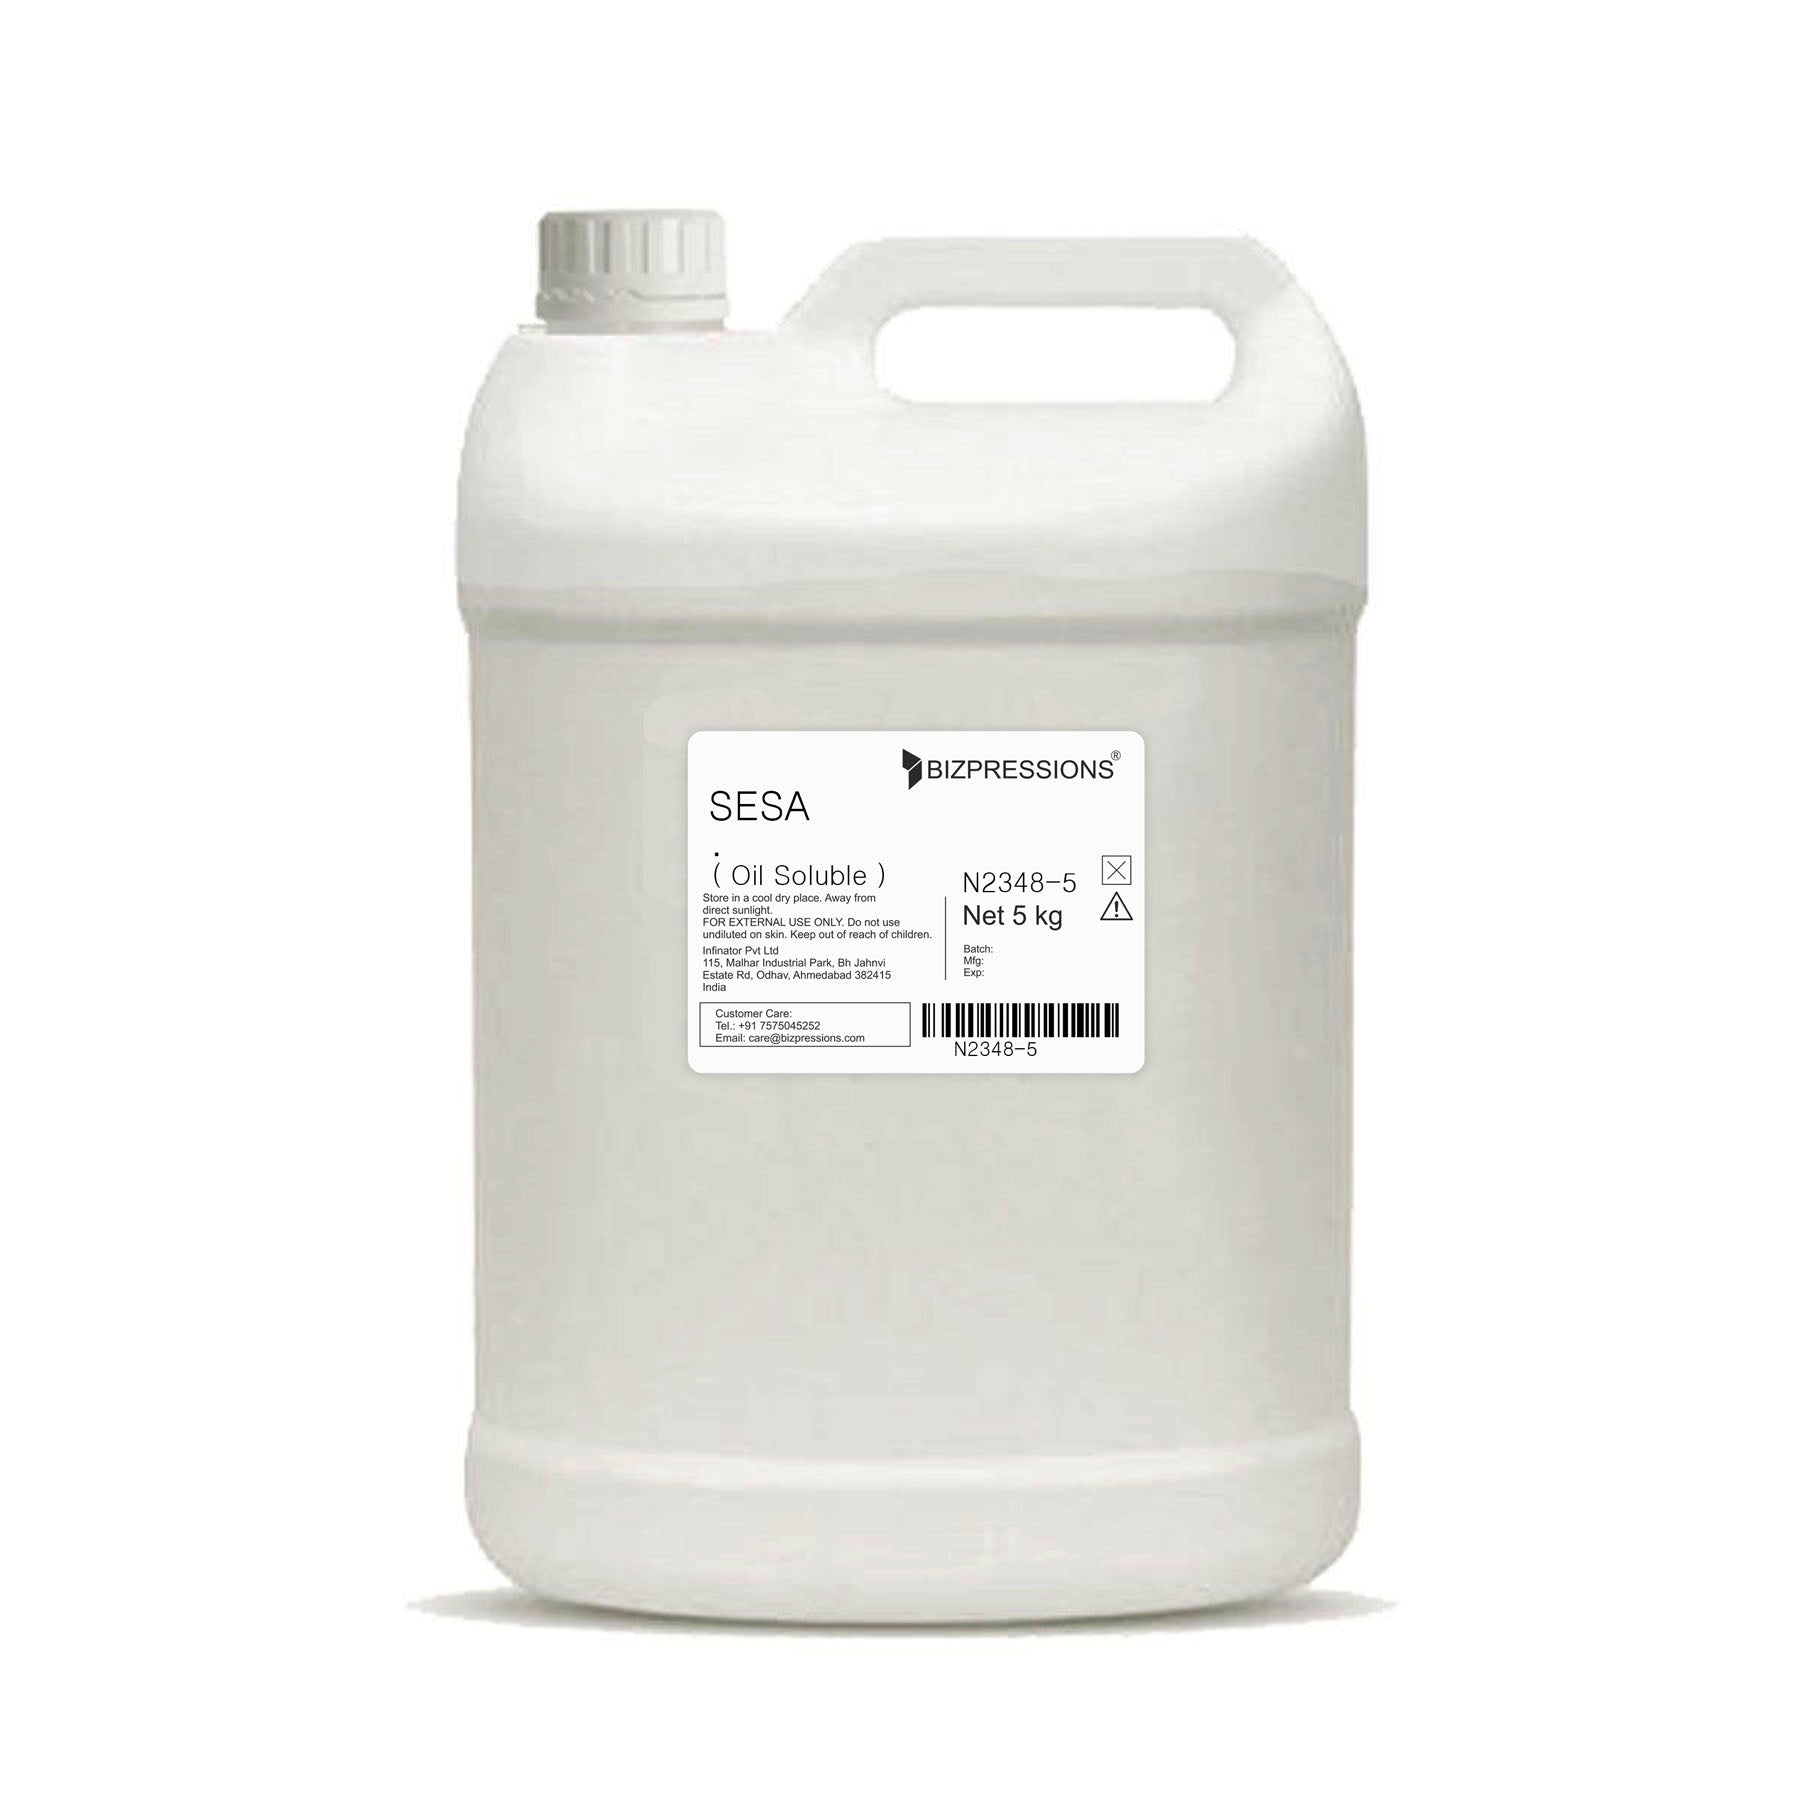 SESA - Fragrance ( Oil Soluble ) - 5 kg